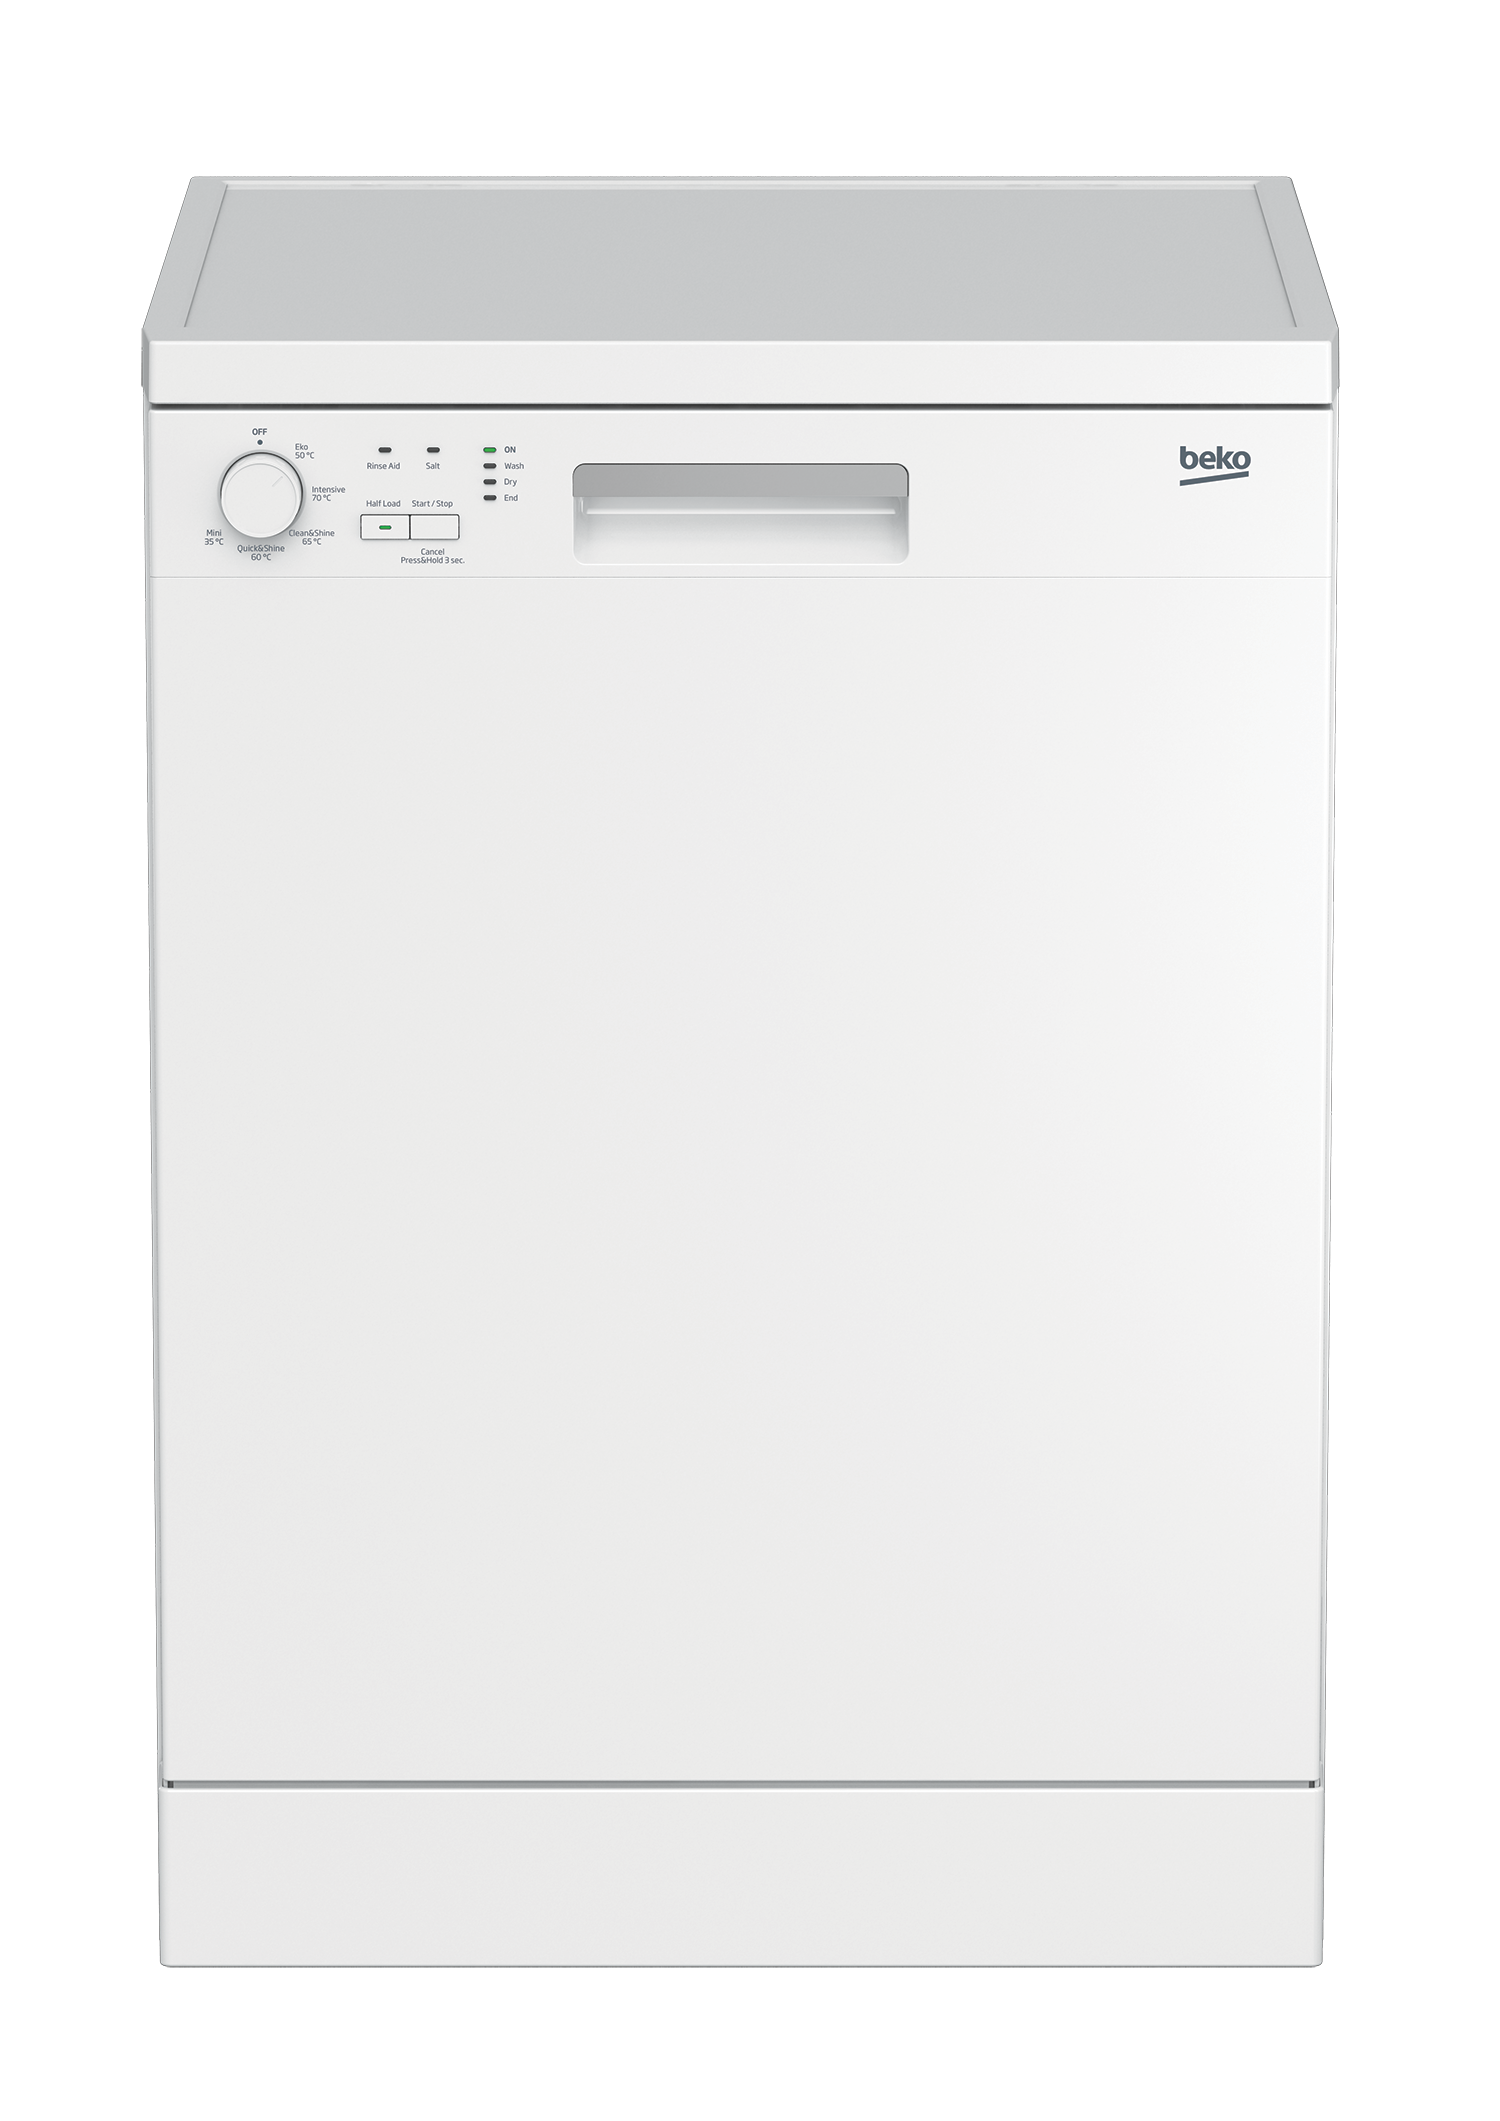 freestanding dishwasher size